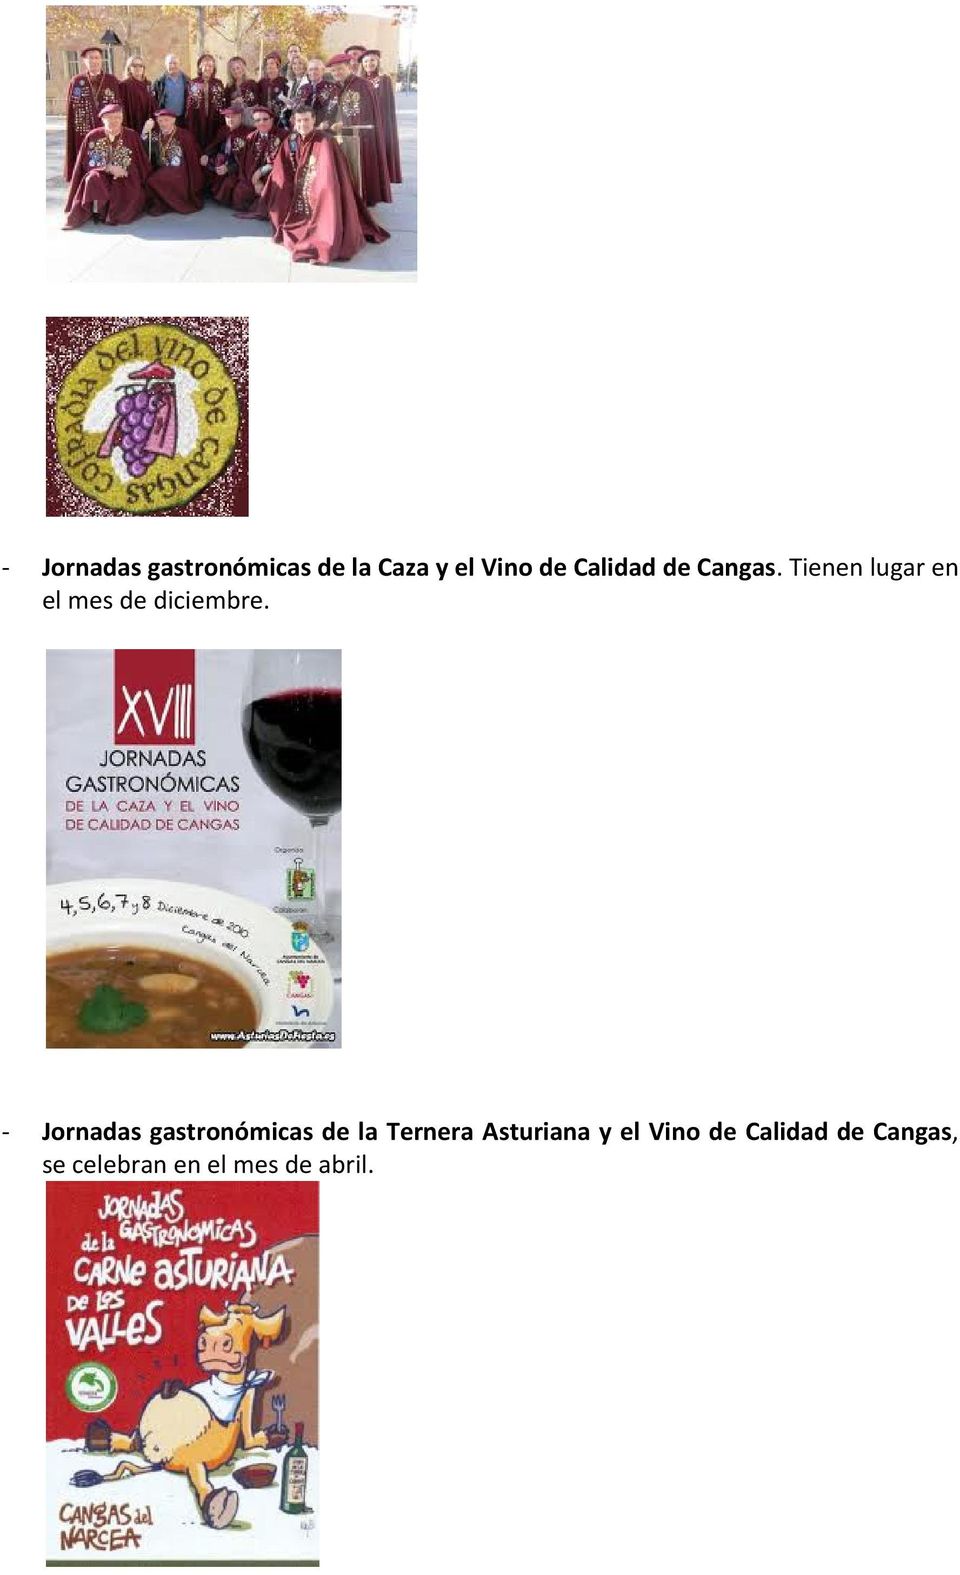 - Jornadas gastronómicas de la Ternera Asturiana y el